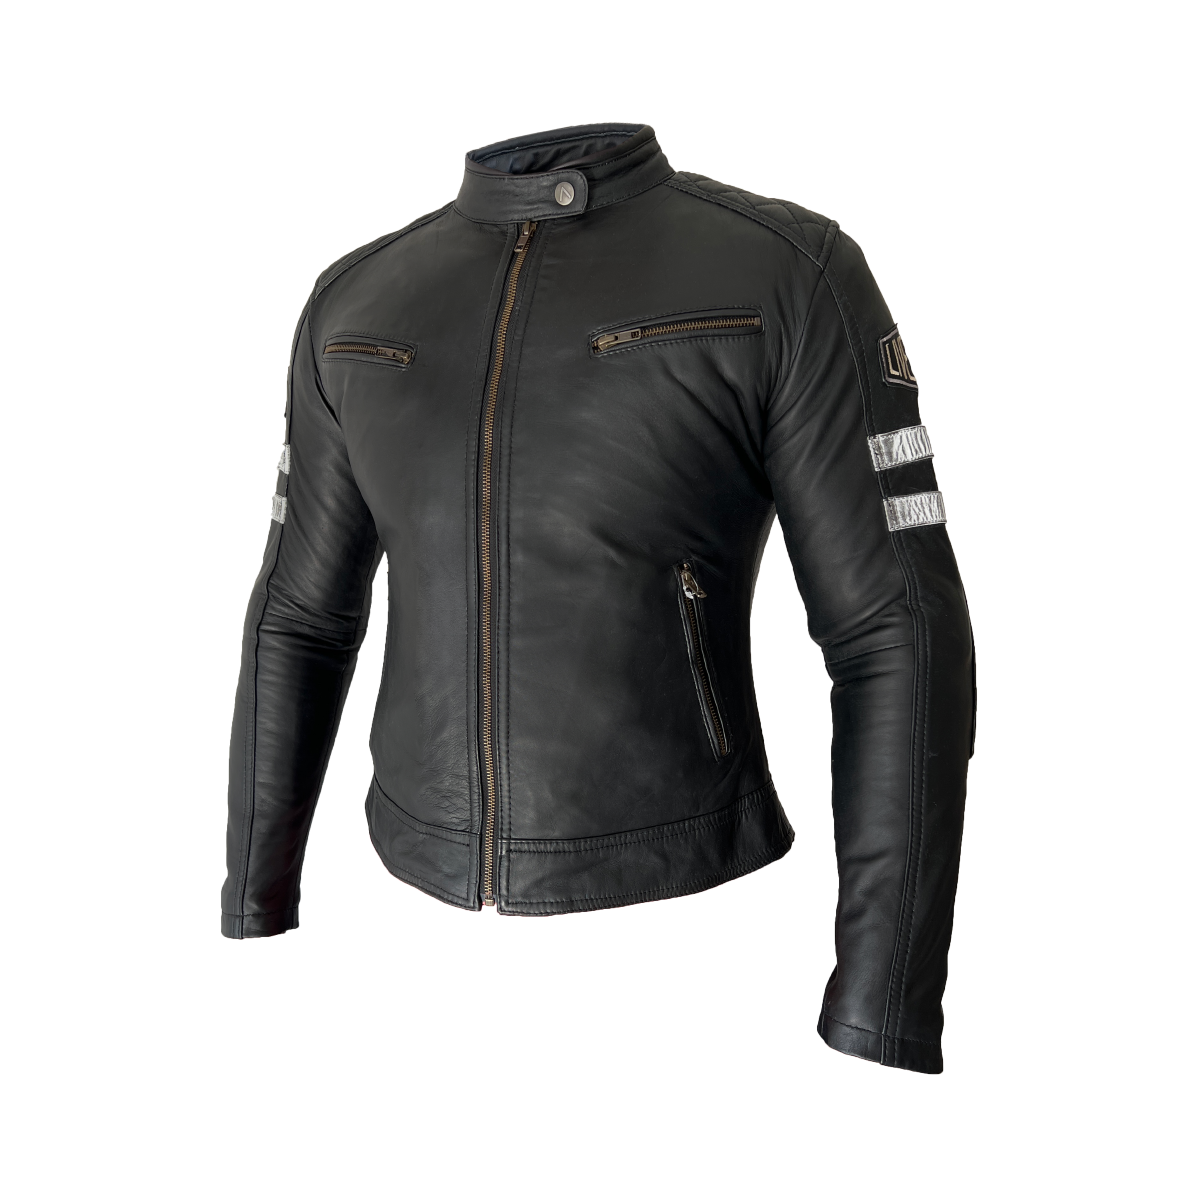 ARMA The Tiegan Leather Jacket Ladies Black | Buy Online in South ...